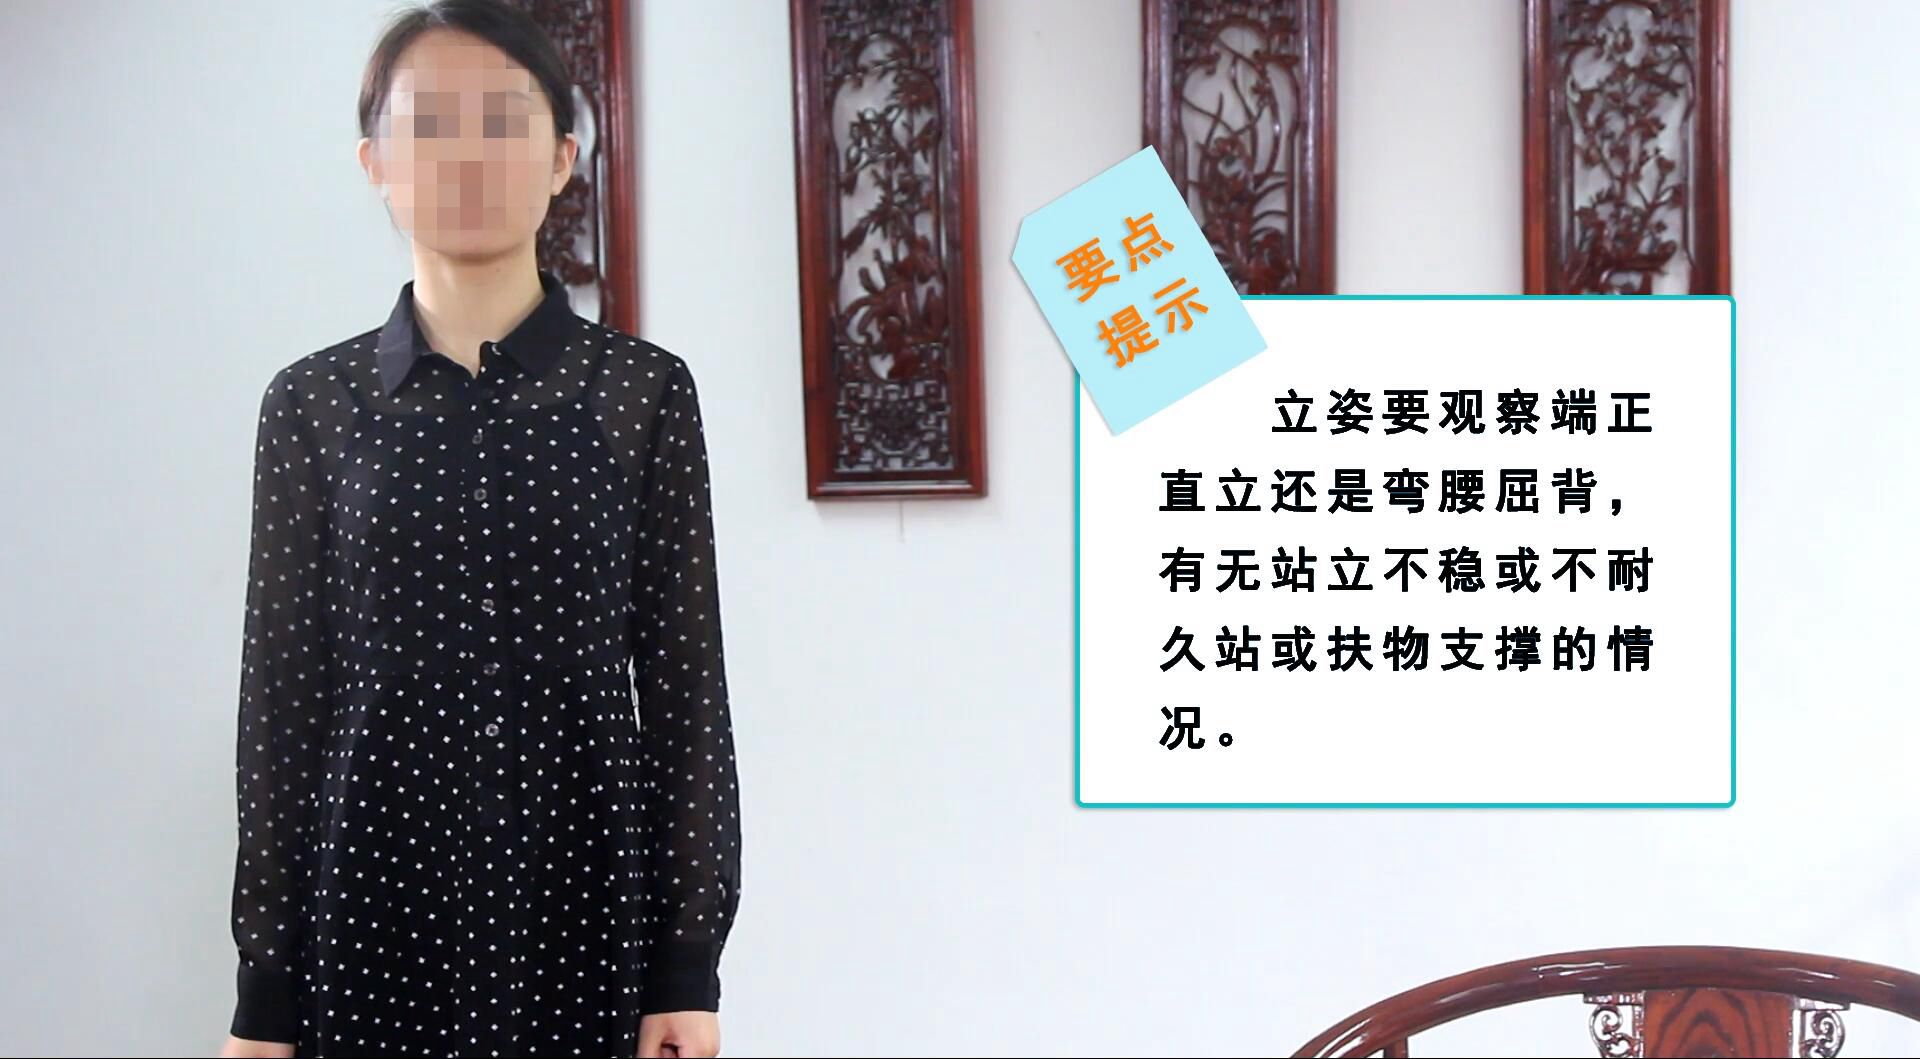 中医医师资格考试实践技能规范化操作视频上线